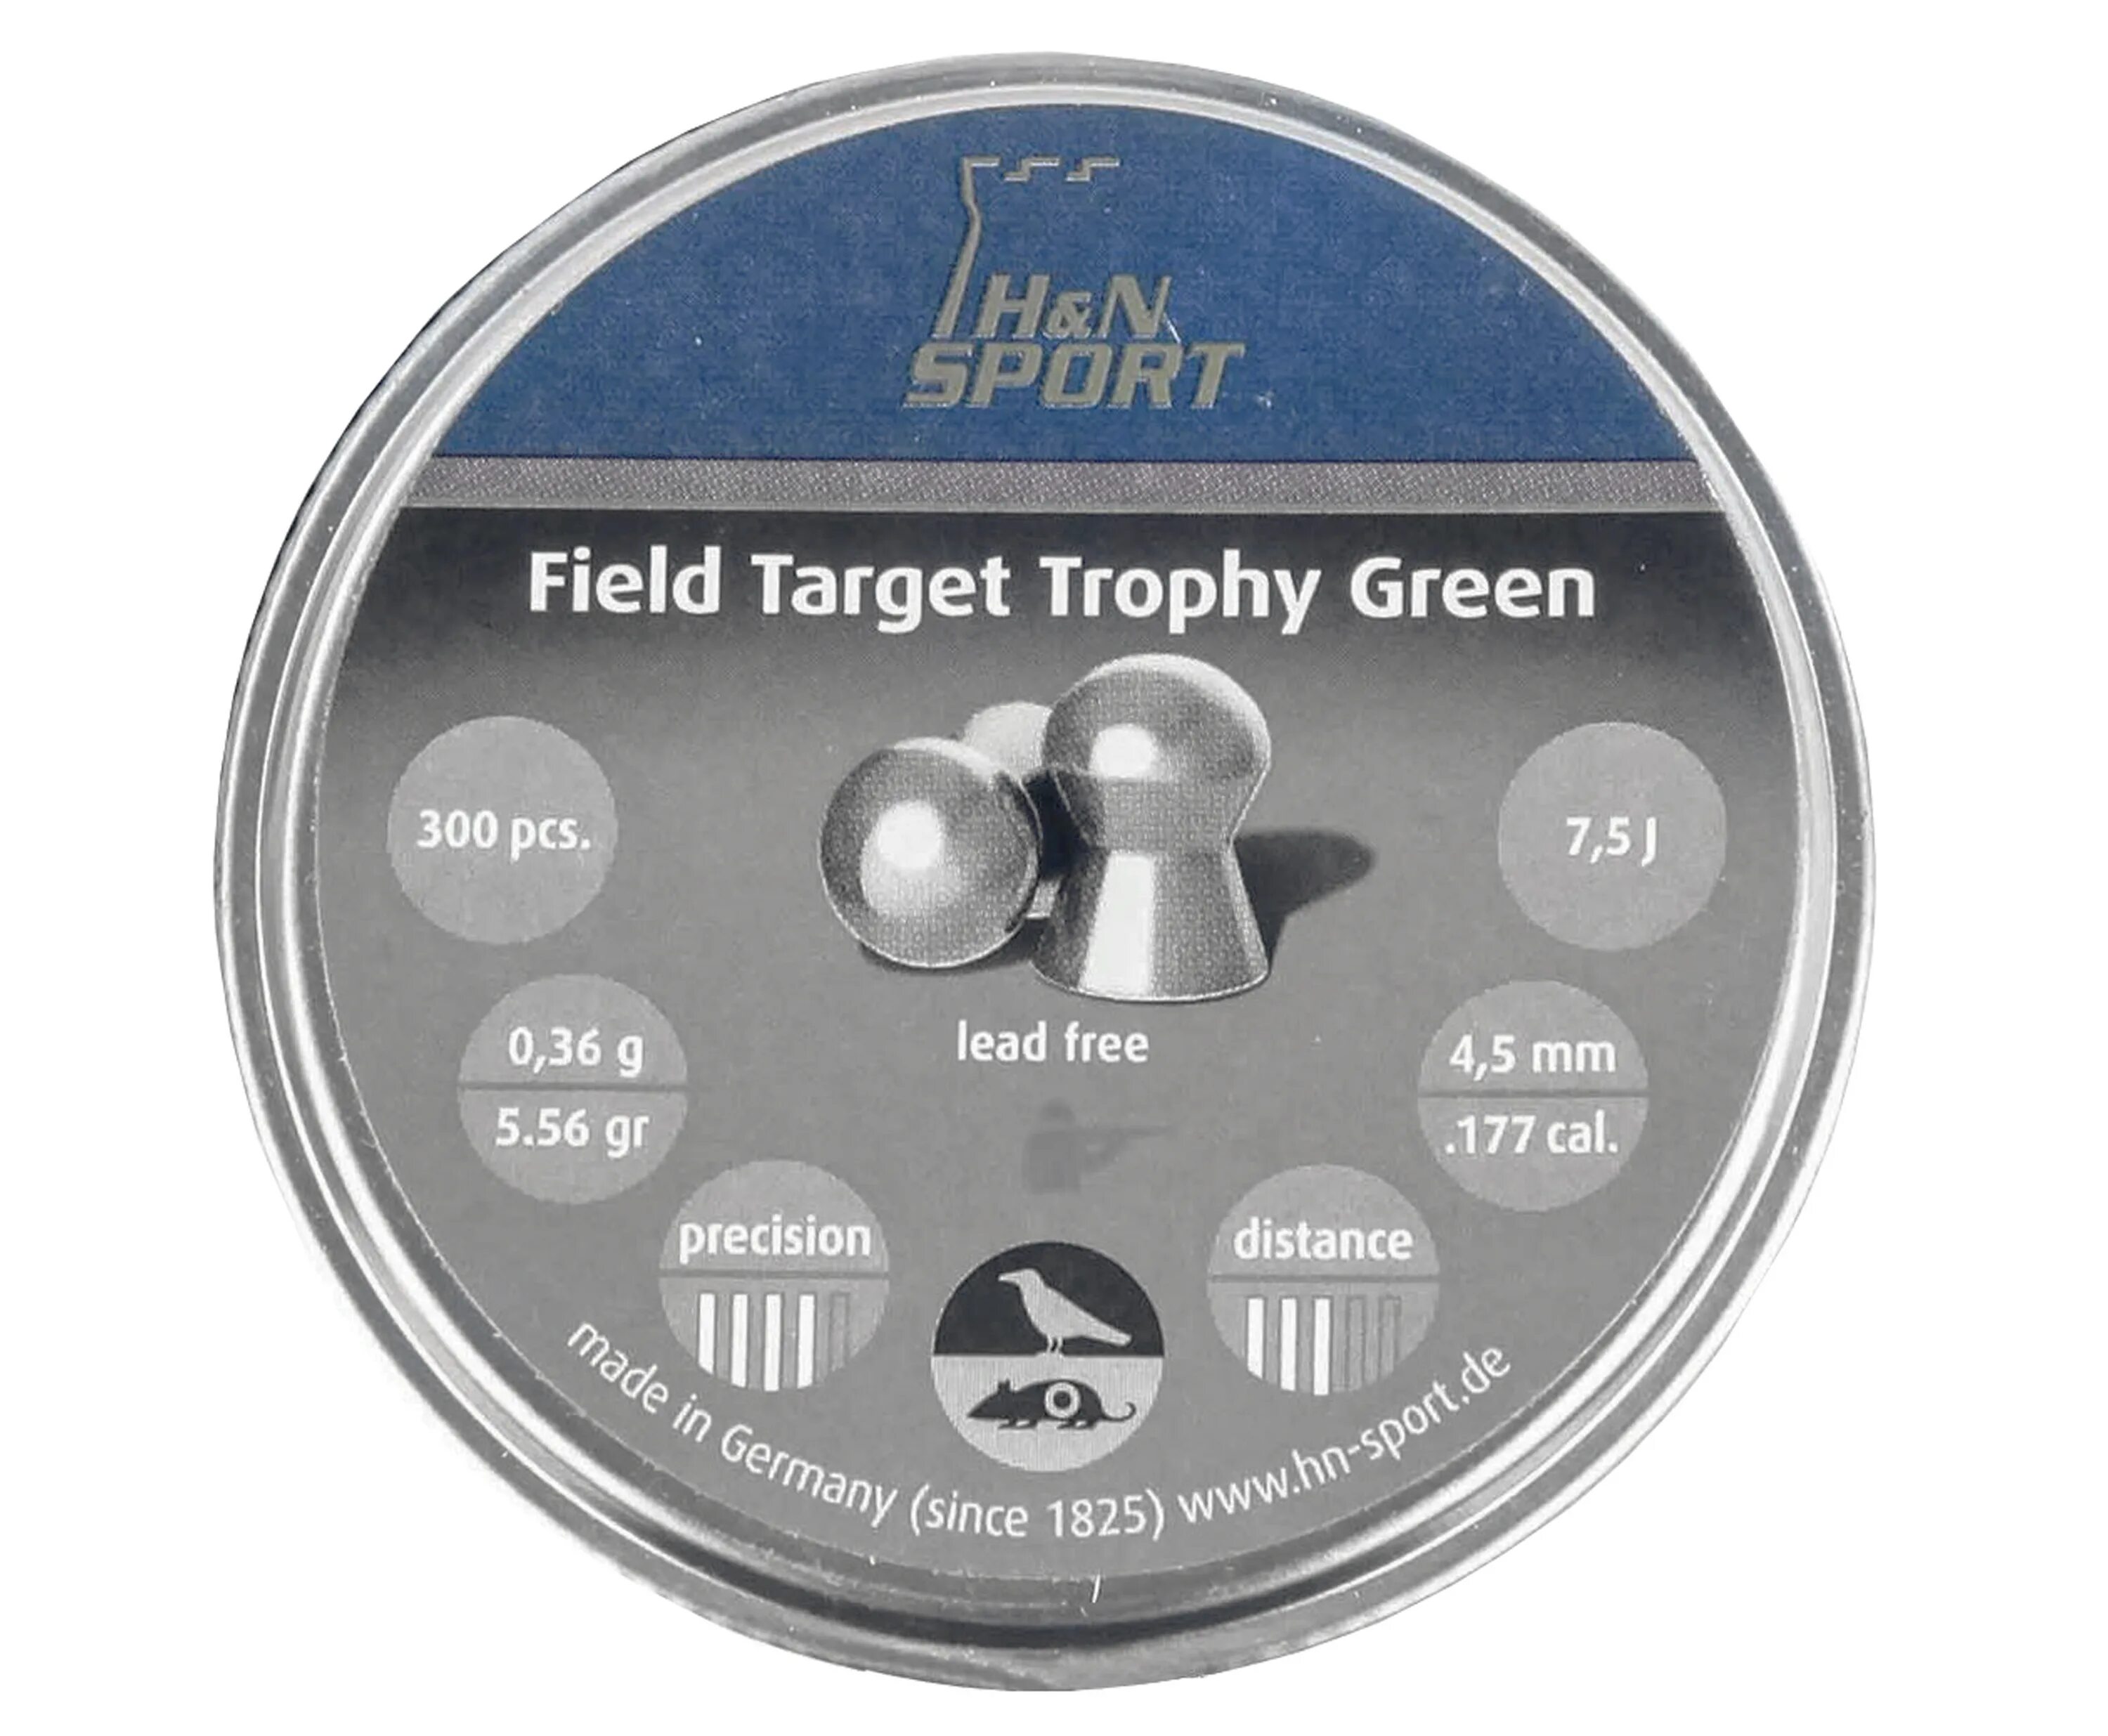 H N field target Trophy 4.5 мм. Пули h&n field target Trophy Green, круглоголовые, 0,36 г. Field target Trophy Green 4.5 0.36 г. H&N field target Trophy Power 4.5mm/0.57g. Field target